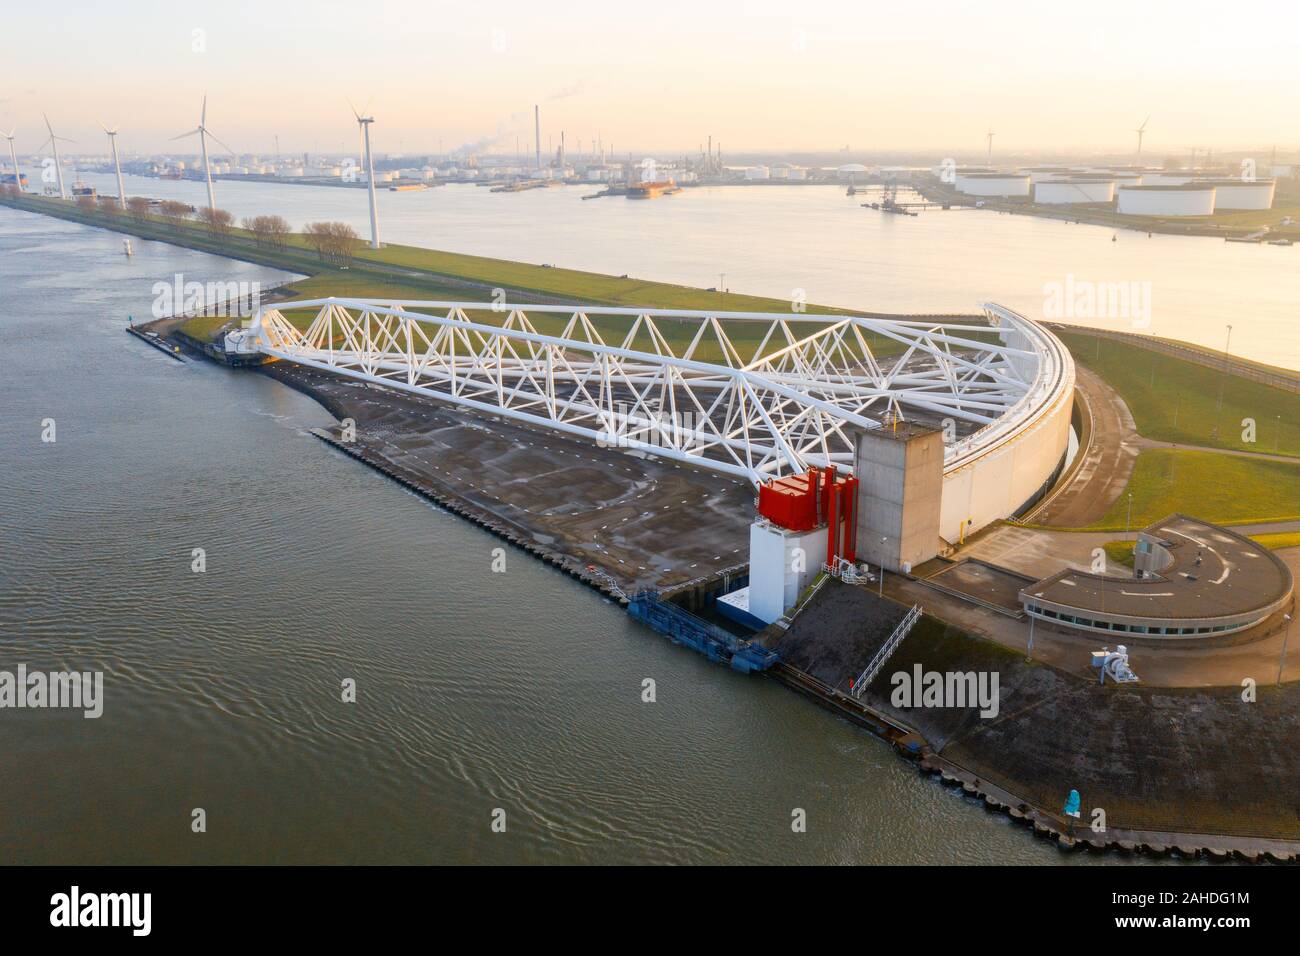 Luftbild von Zuyid Maeslandtkering - Rotterdam - Holland ist eine imposante Sturmflutwehr. Die Maeslantkering ist ein Sturmflutwehr auf der imag Stockfoto